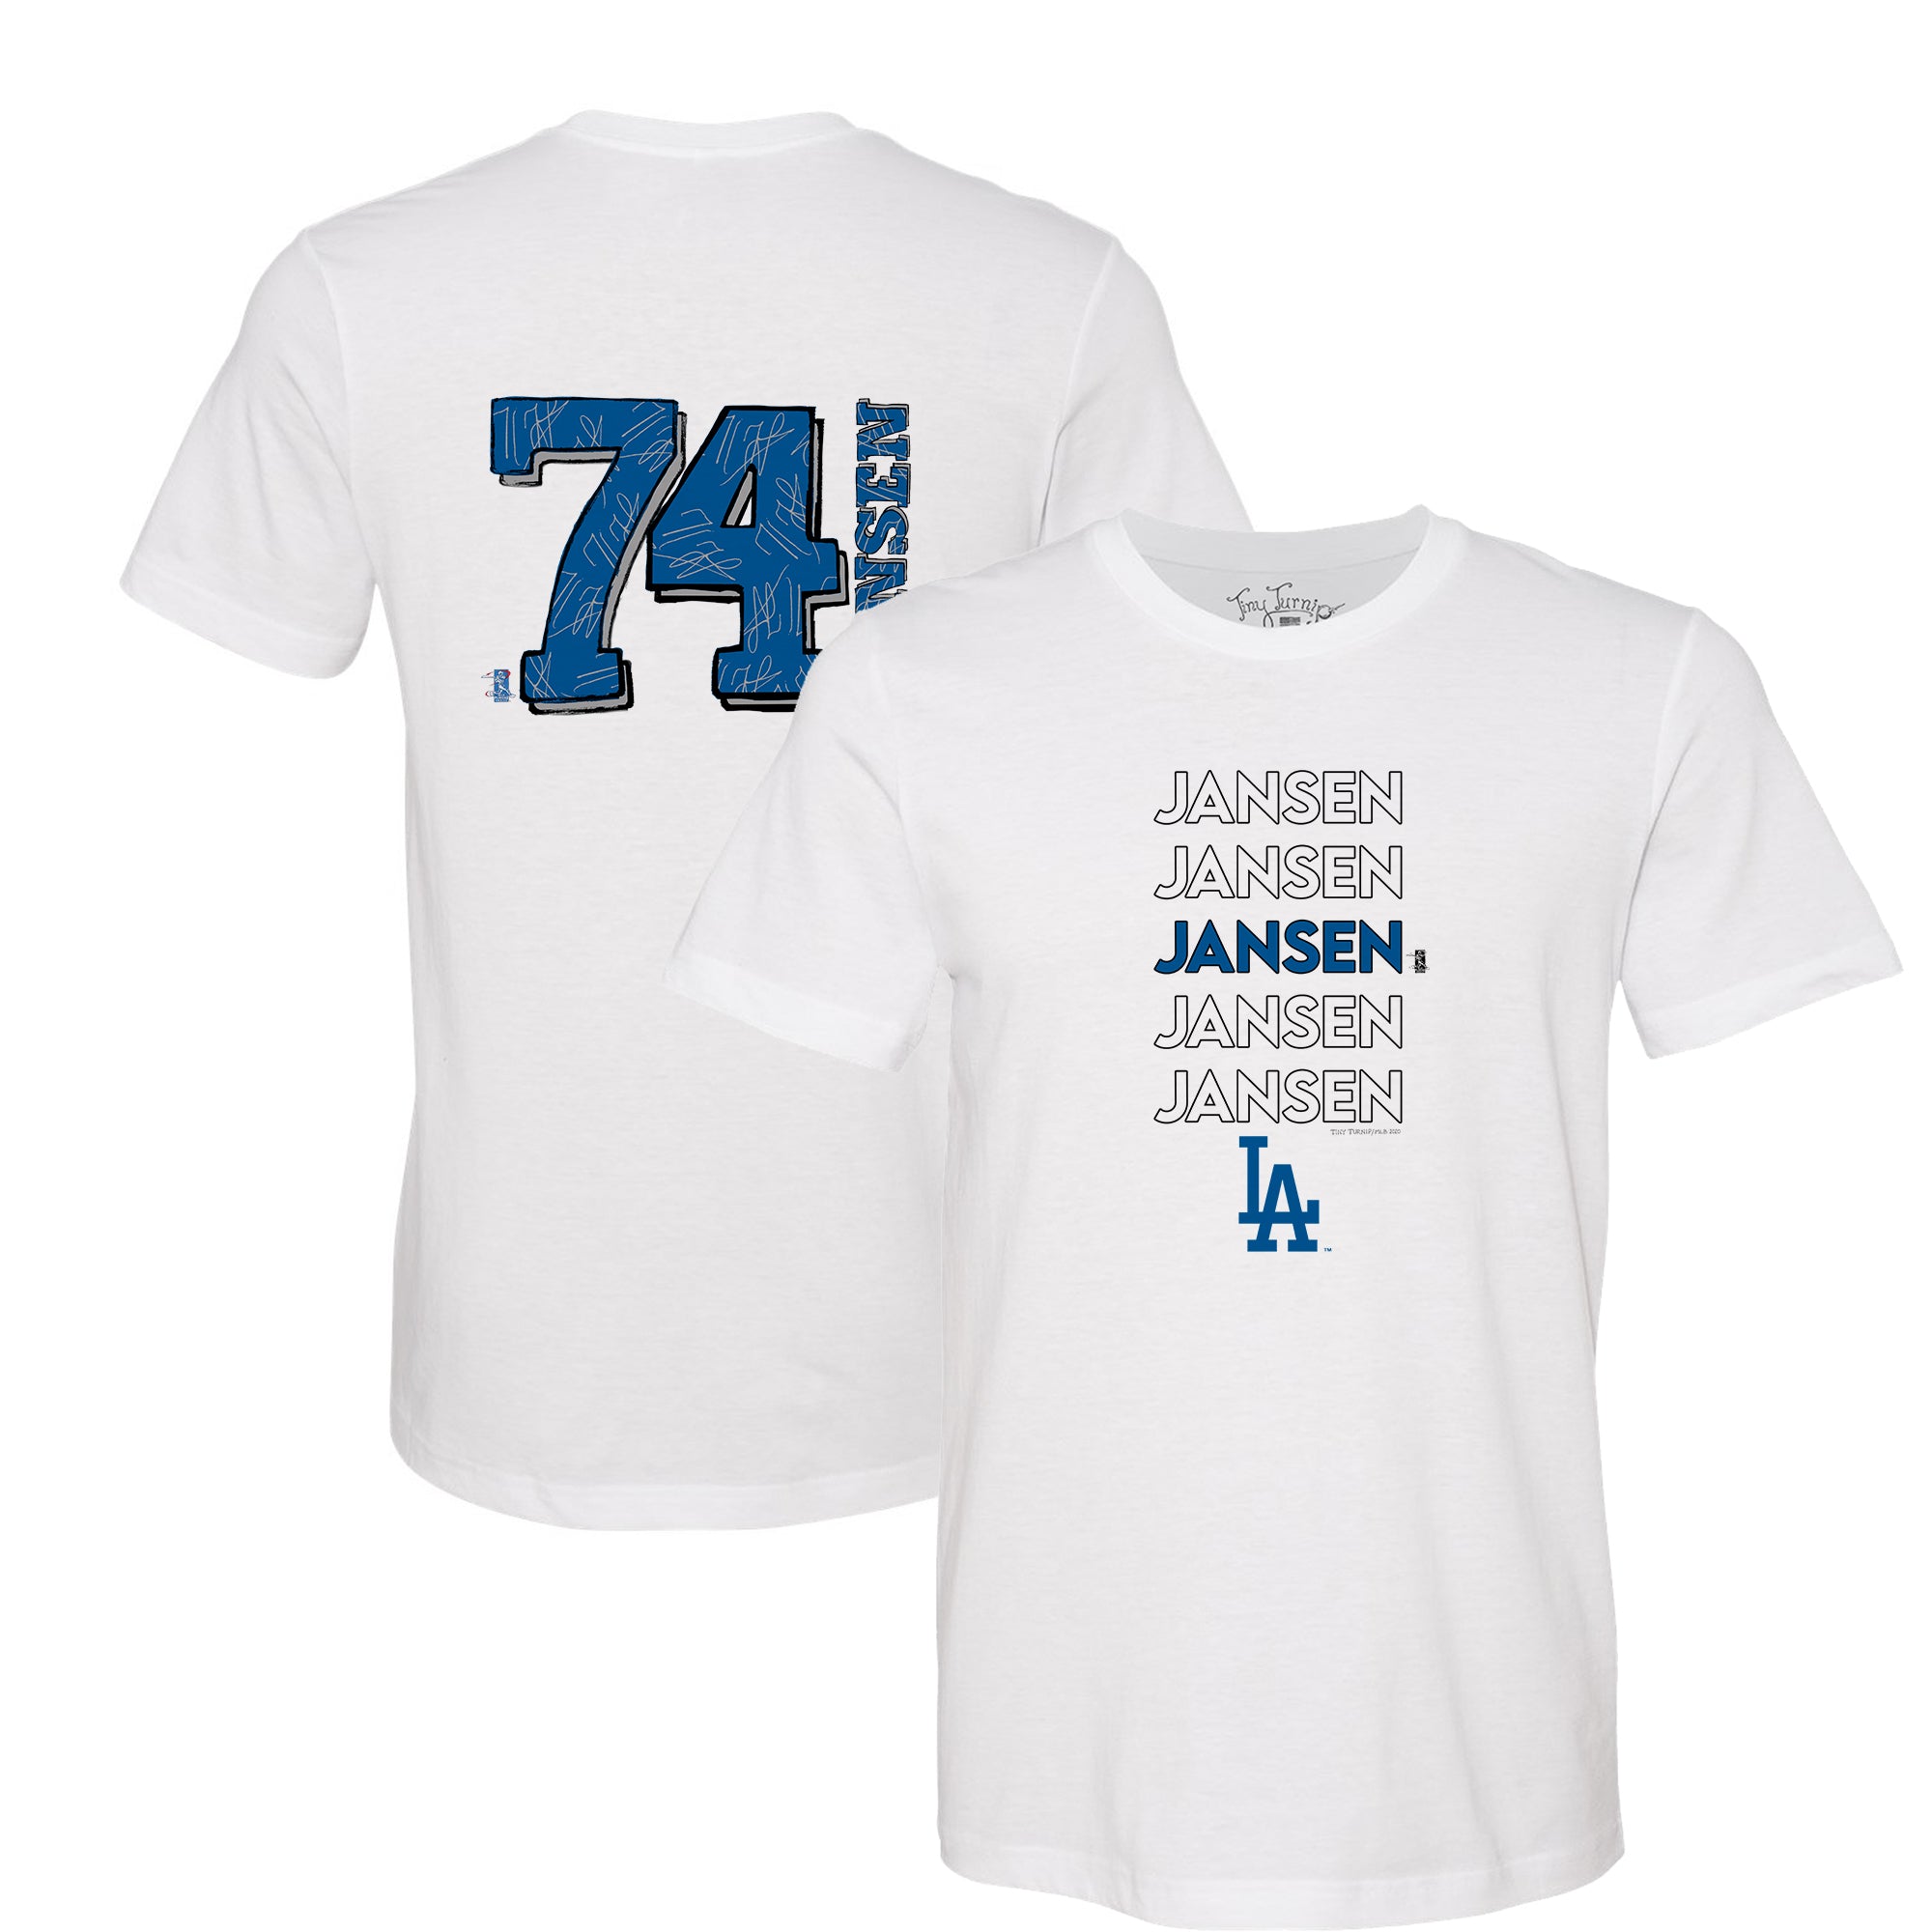 Official Kenley Jansen Jersey, Kenley Jansen Shirts, Baseball Apparel, Kenley  Jansen Gear